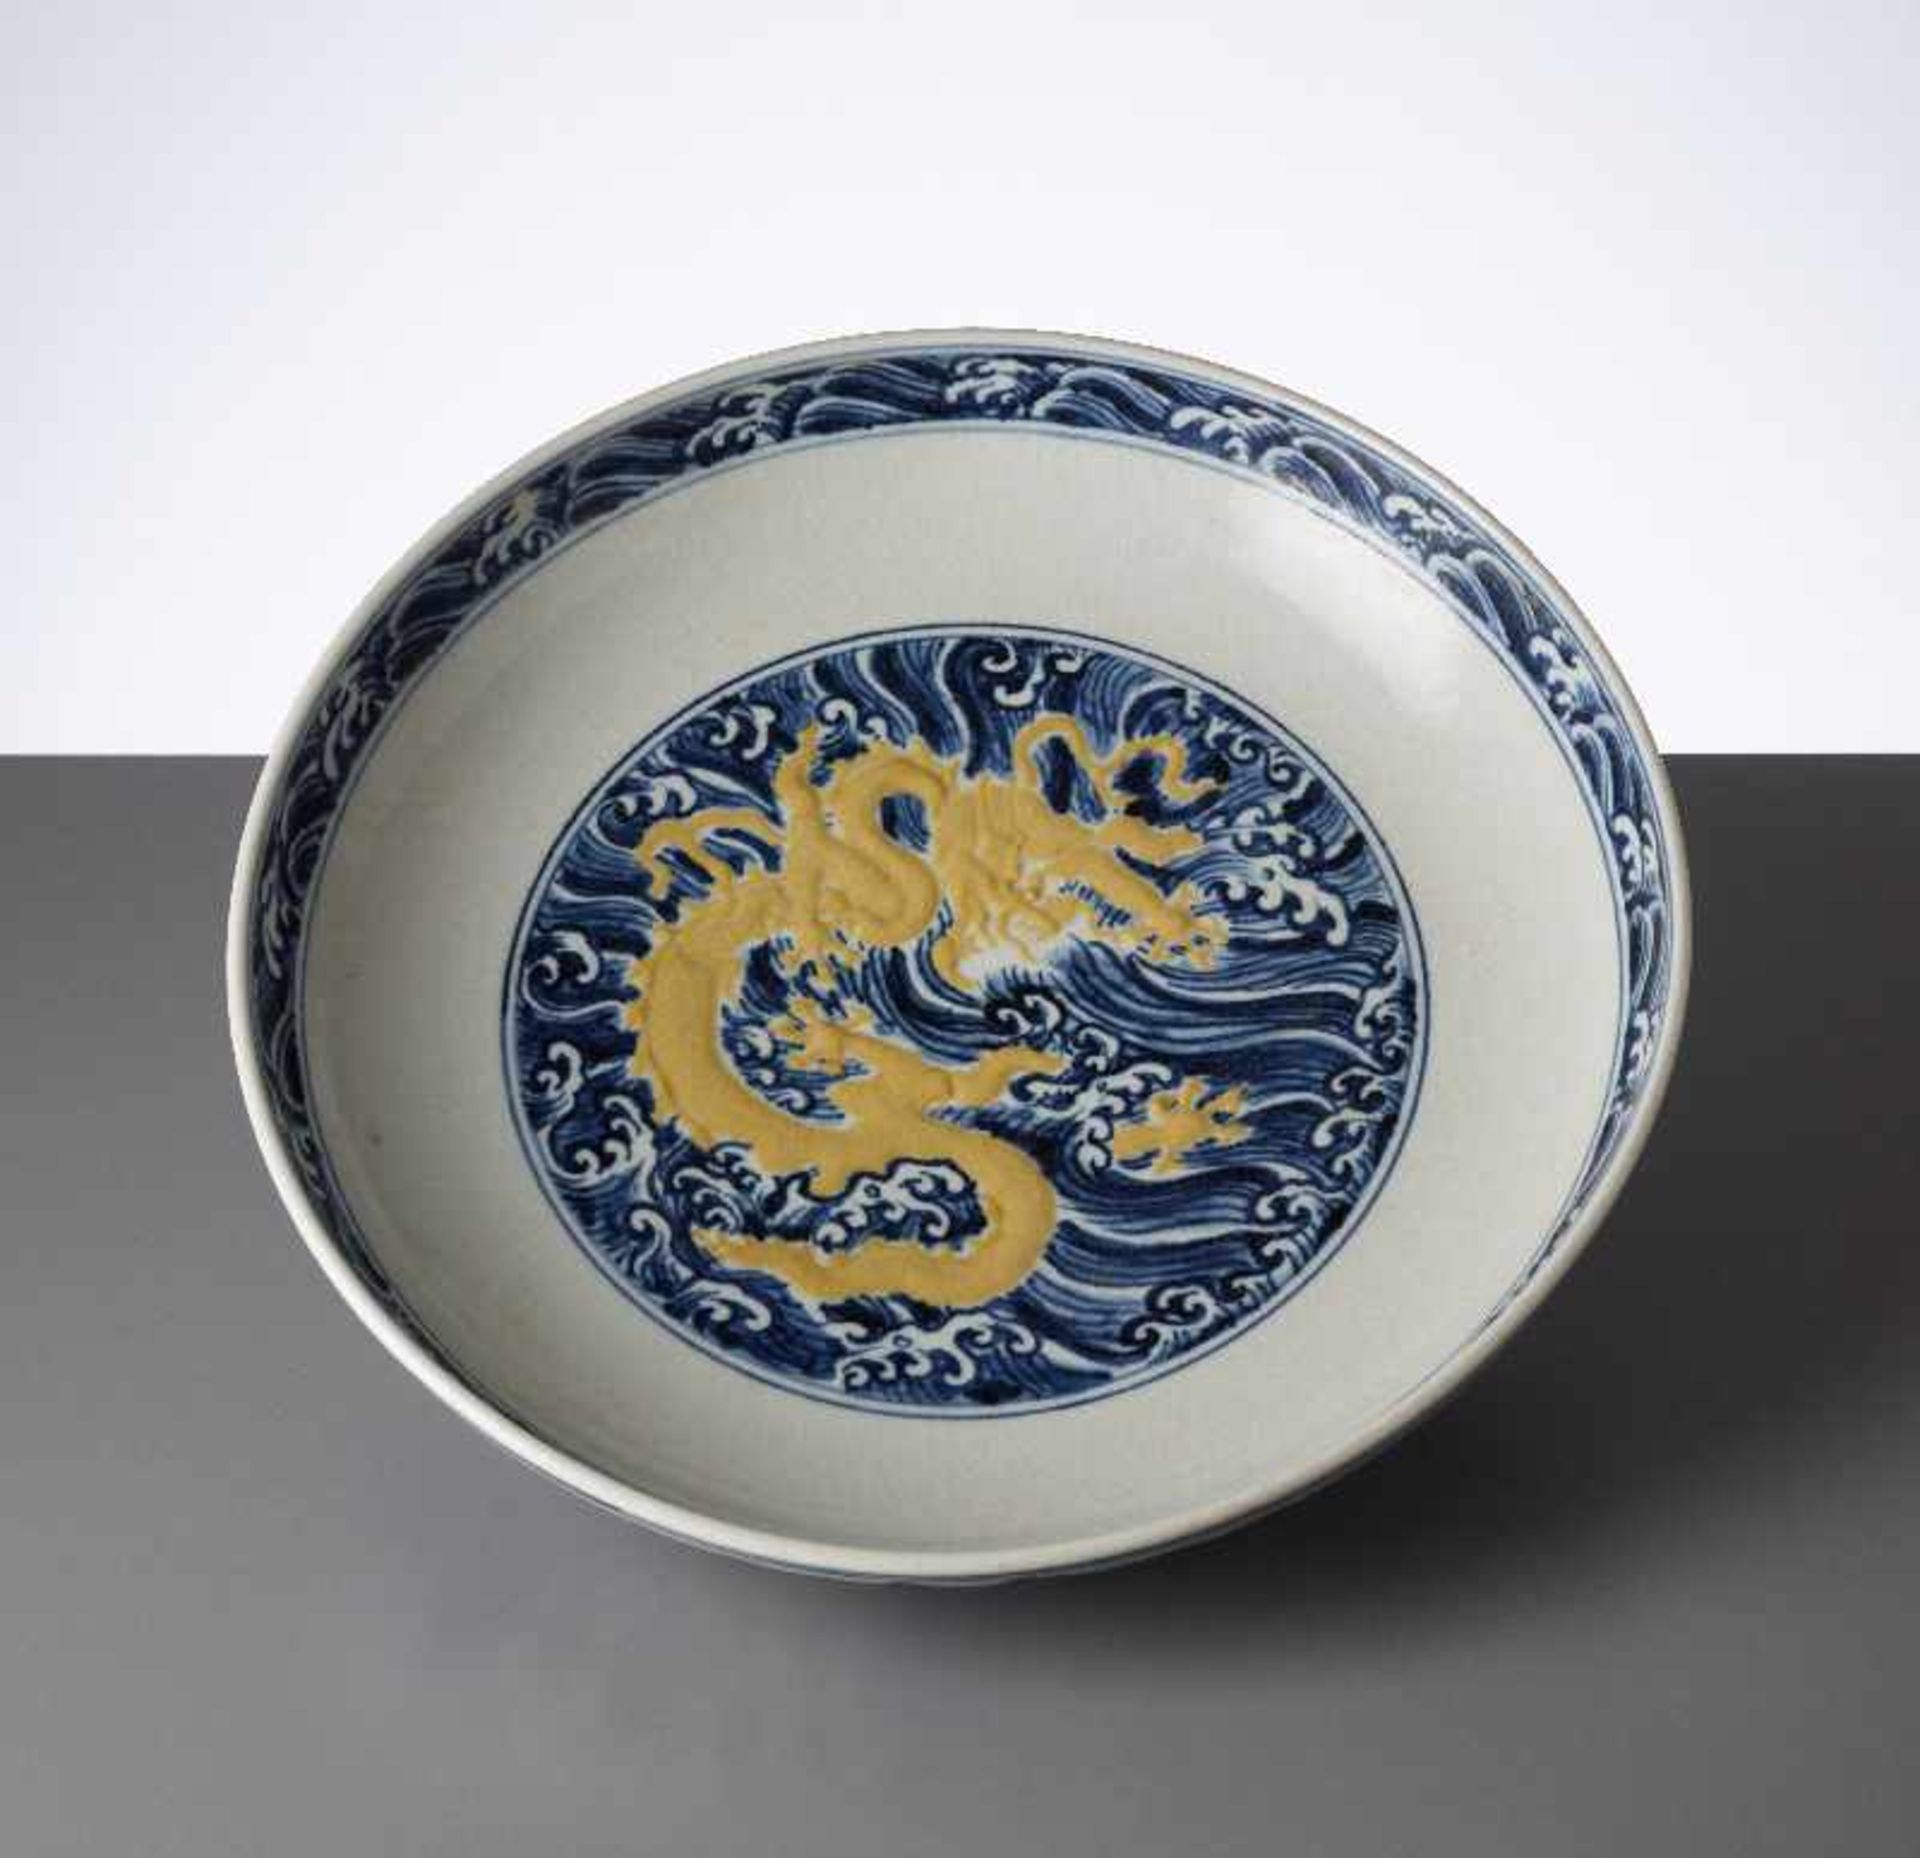 SCHALE MIT MEERESDRACHENBlauweiß-Porzellan. China, im Stil der Ming-Zeit, ca. Mitte 20. JhIm